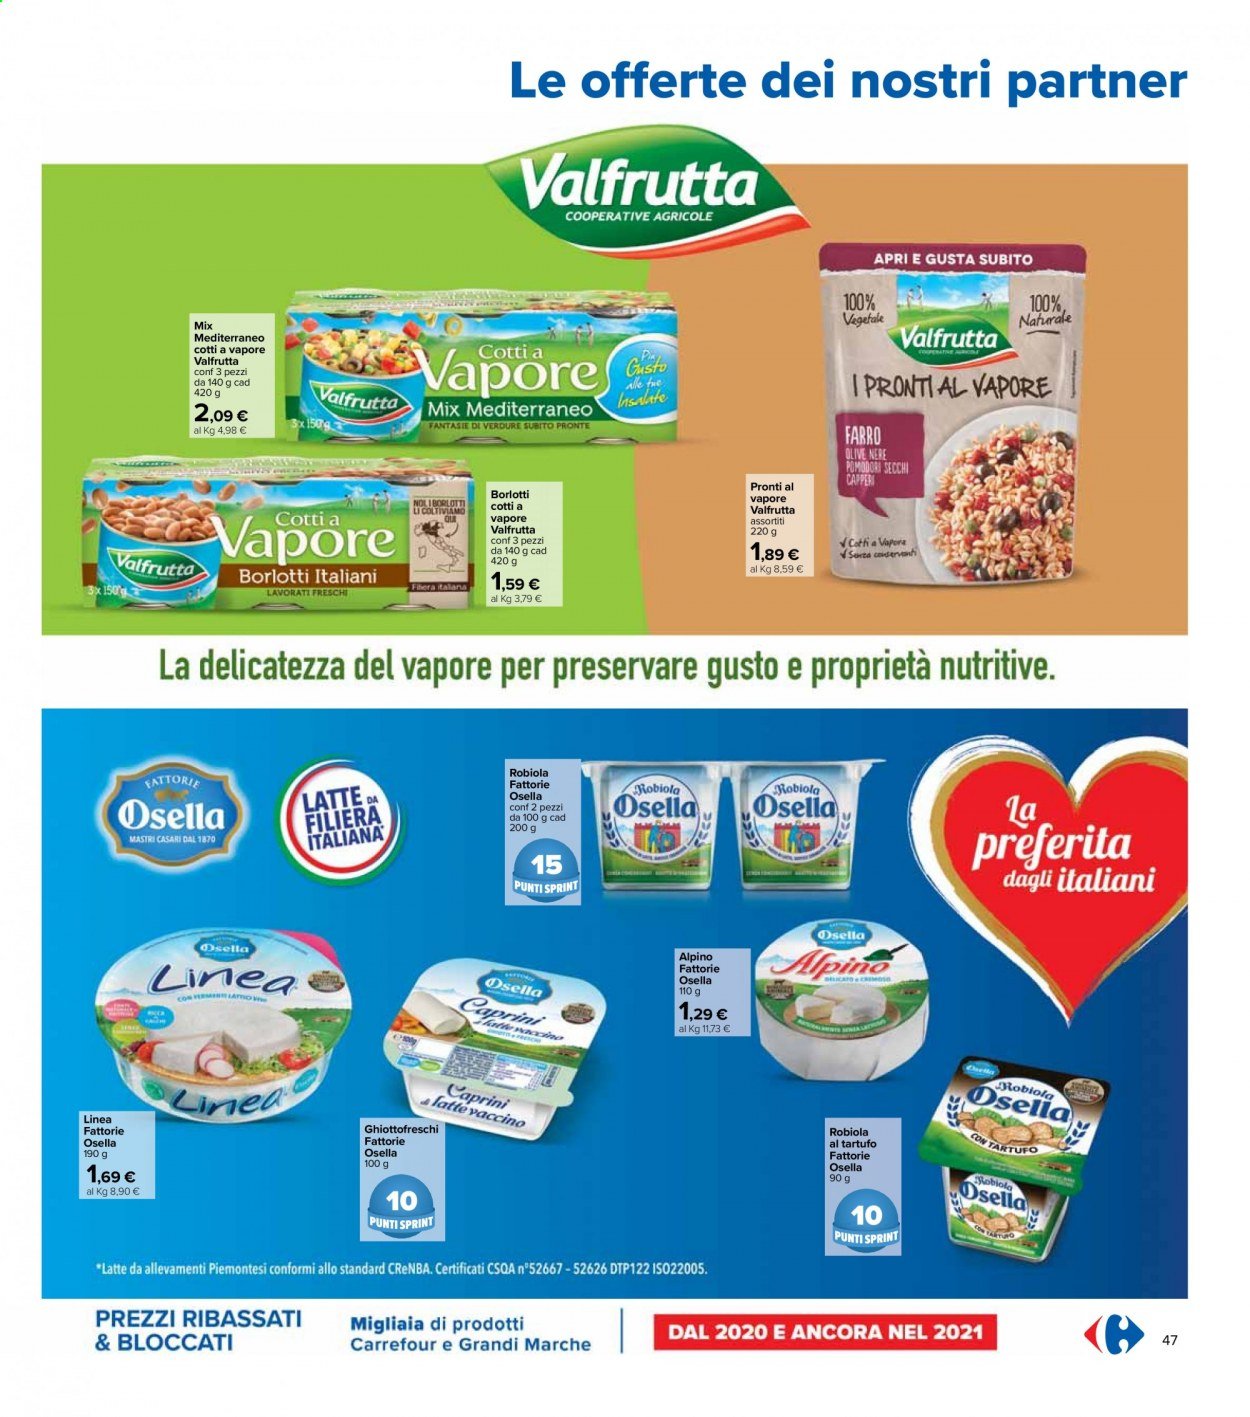 Volantino Carrefour - 6/4/2021 - 21/4/2021 - Prodotti in offerta - tartufo, pomodori, robiola, latte, Valfrutta, olive, olive nere, fagioli borlotti, pomodori secchi. Pagina 47.